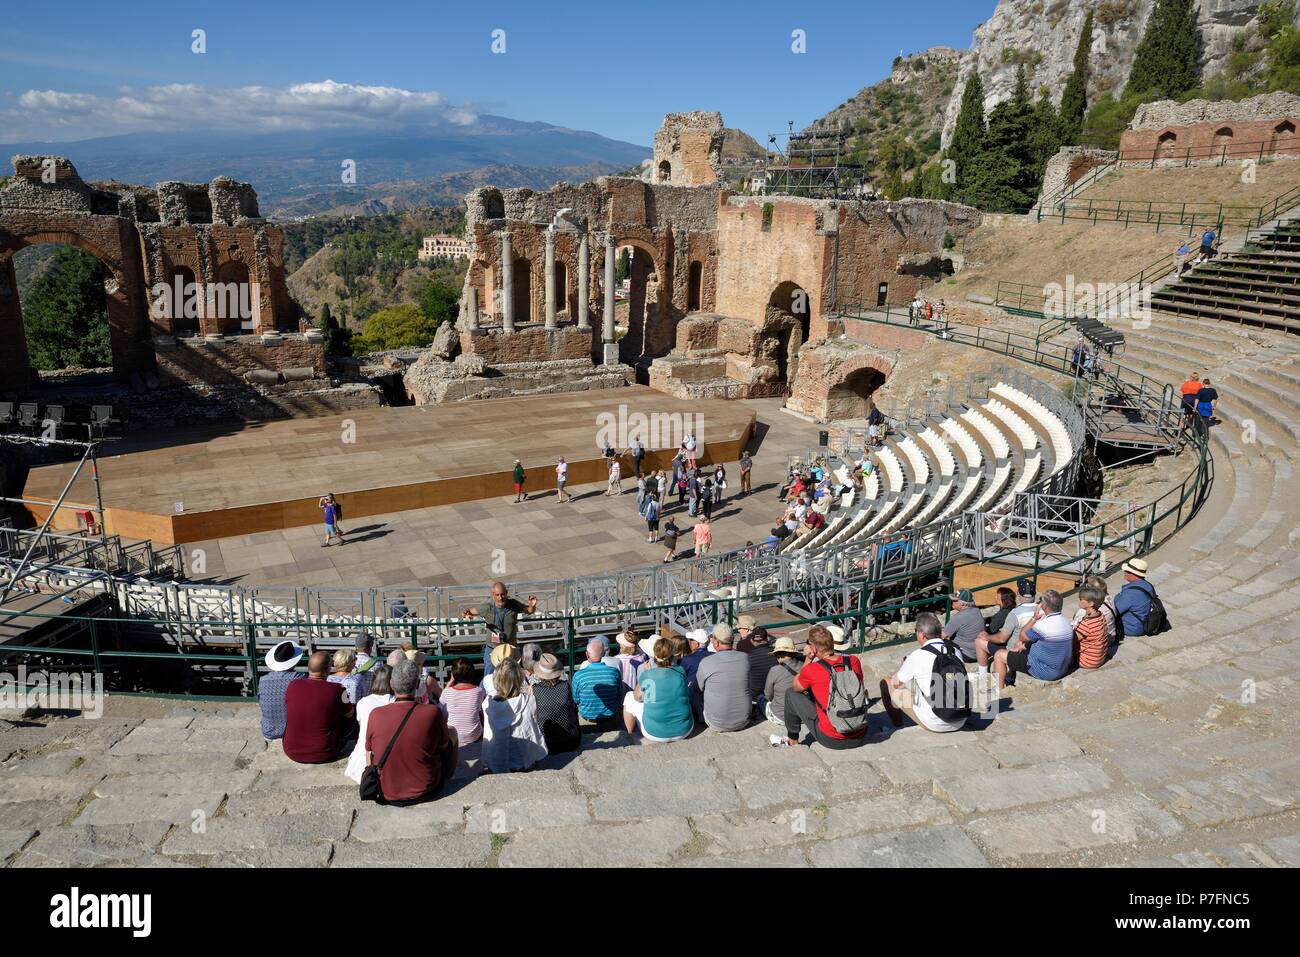 Teatro Greco a partire dal III secolo D.C. con una vista del vulcano Etna, Teatro Greco, Taormina, provincia di Messina, Sicilia, Italia Foto Stock